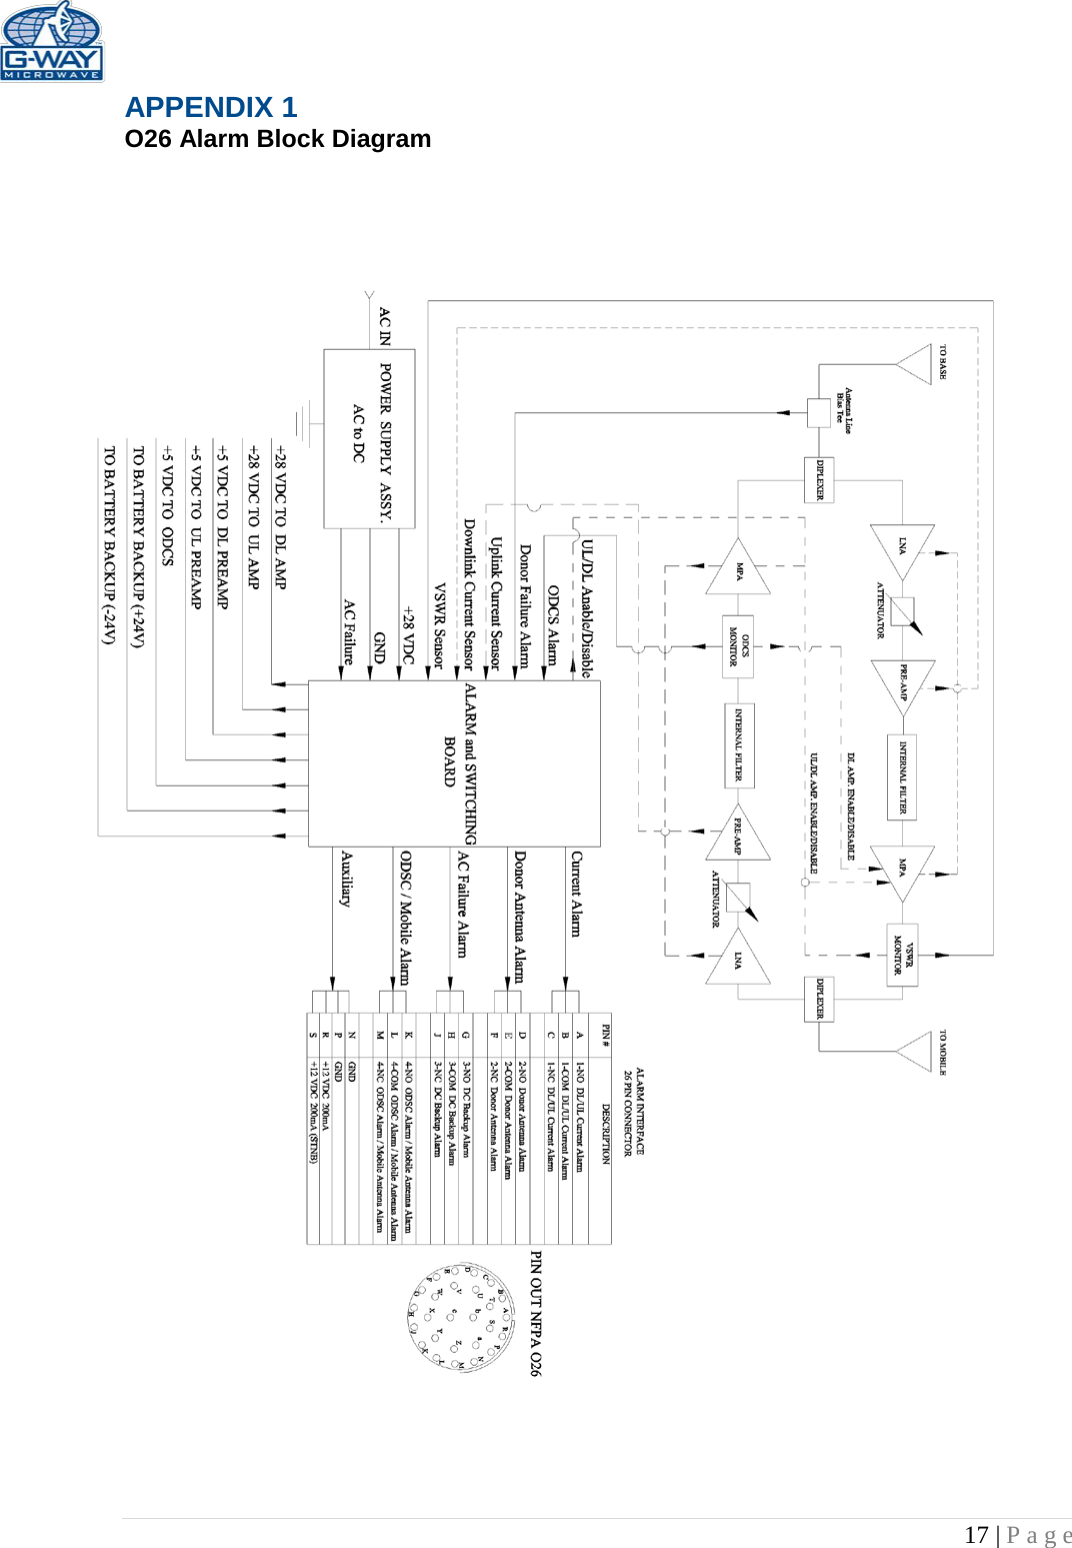   17 | Page  APPENDIX 1  O26 Alarm Block Diagram                          